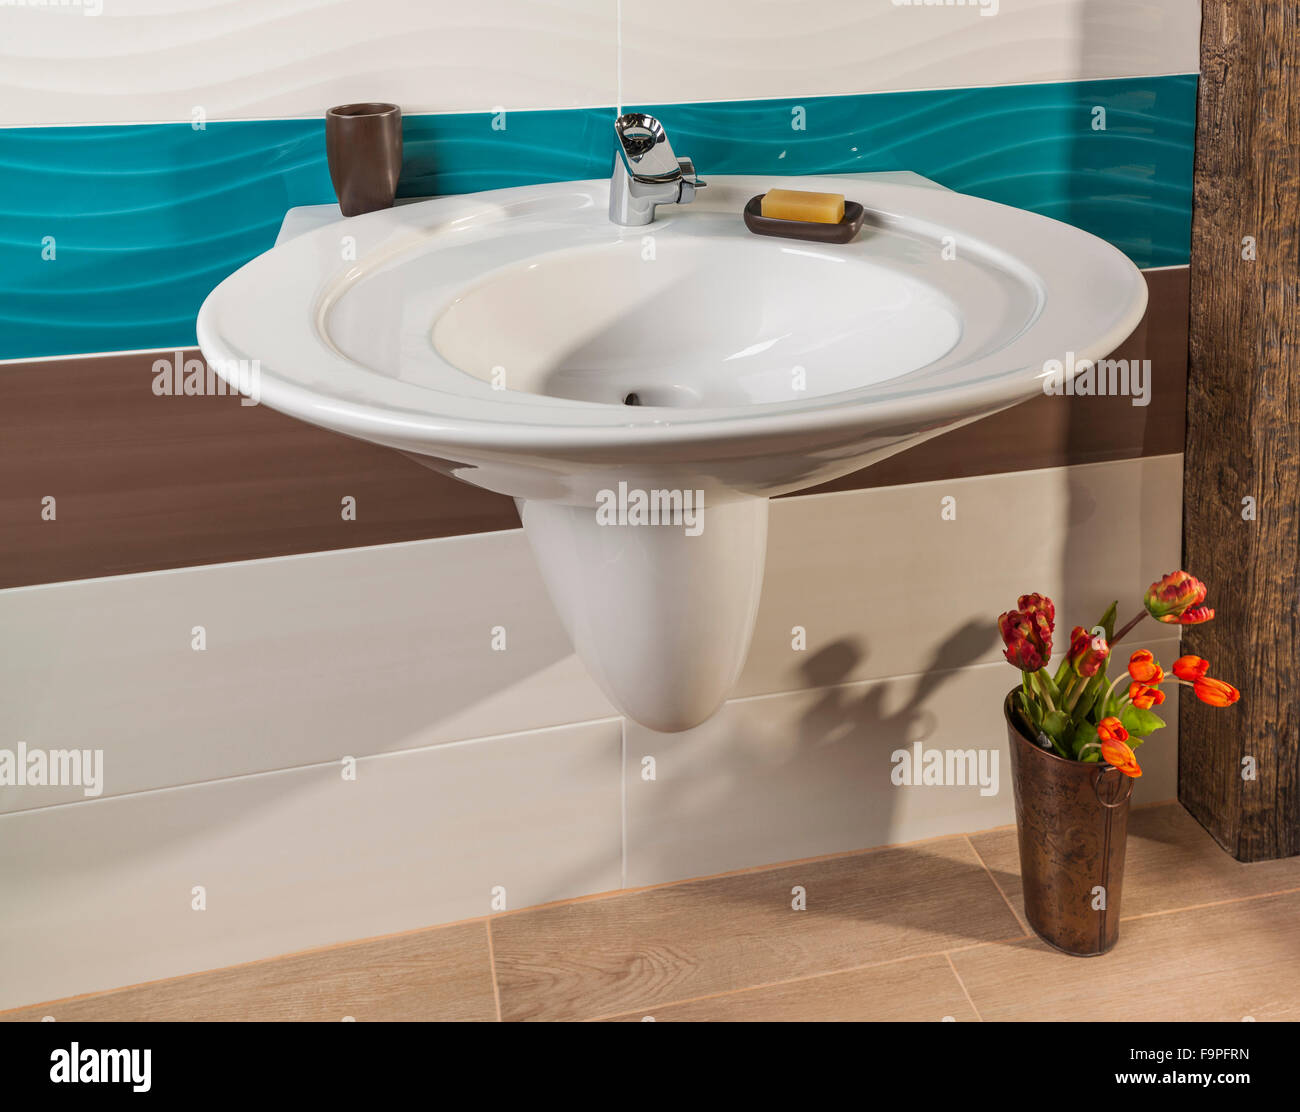 Lavabo dans une salle de bains de luxe décorées de fleurs Banque D'Images